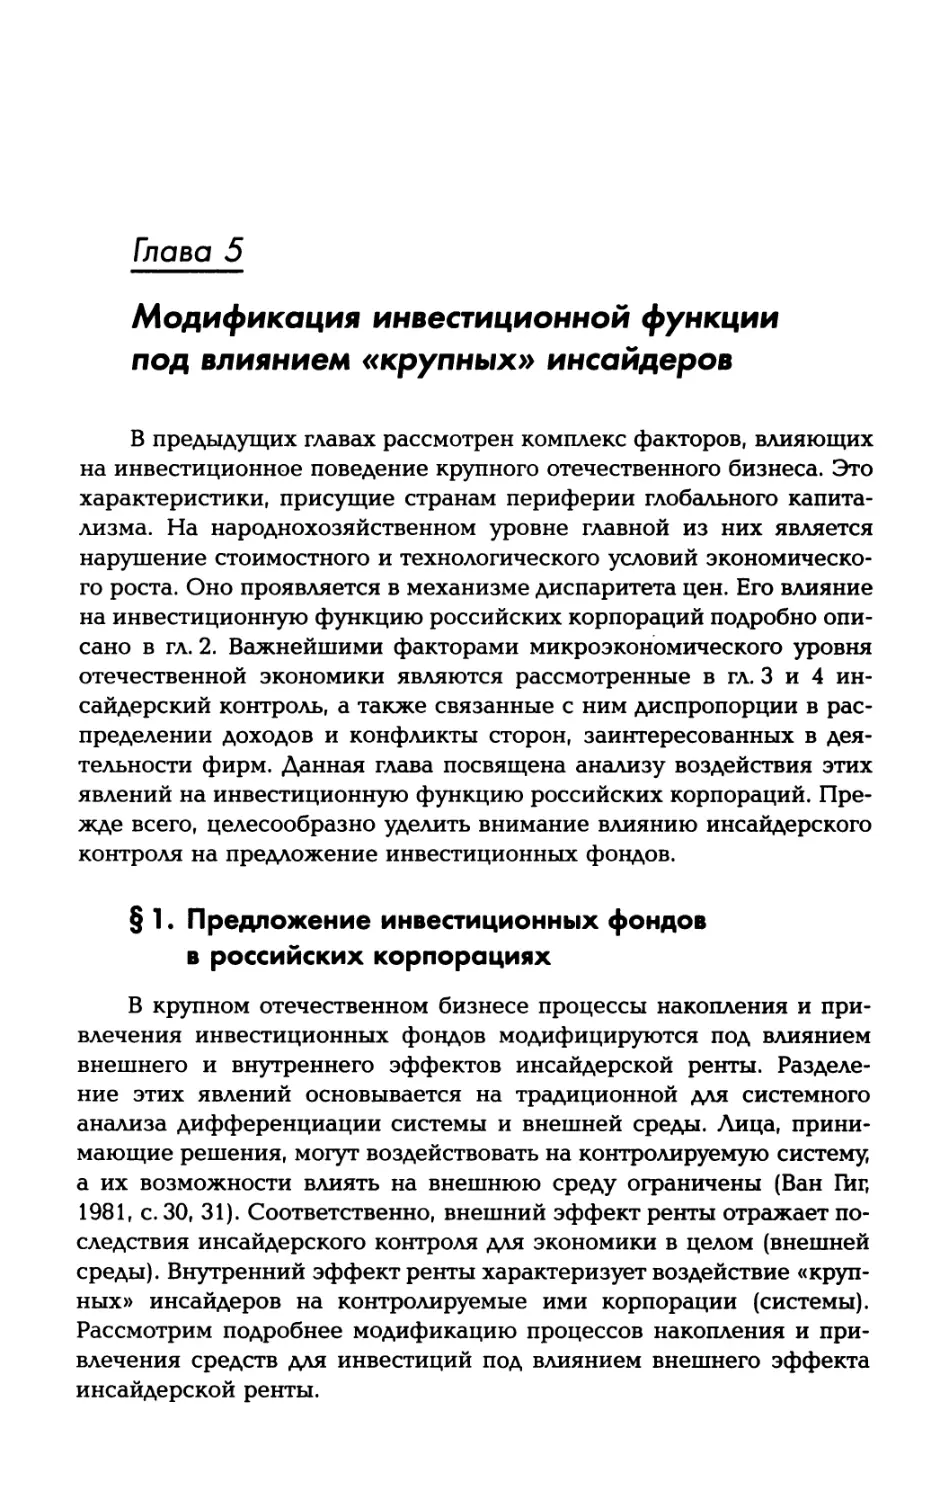 Глава 5. Модификация инвестиционной функции под влиянием «крупных» инсайдеров
§ 1. Предложение инвестиционных фондов в российских корпорациях